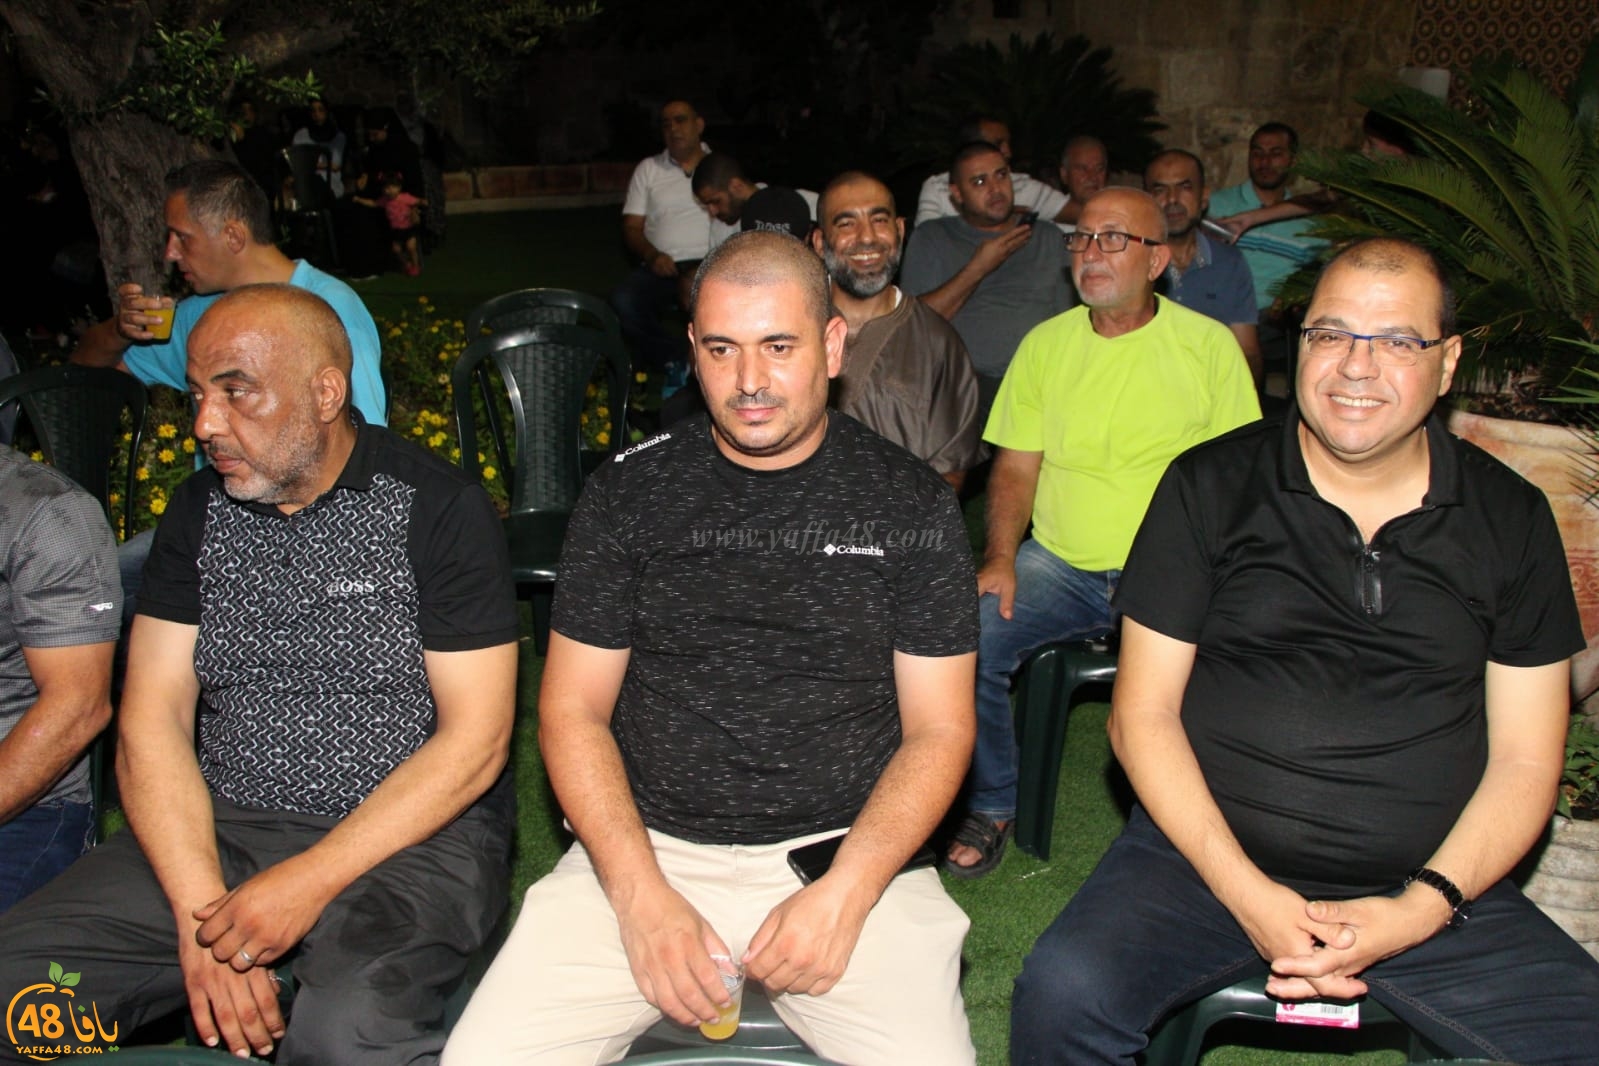  صور: لجنة تيسير الحج والعمرة بيافا تُنظم احتفالاً لتوديع حجاج بيت الله الحرام 